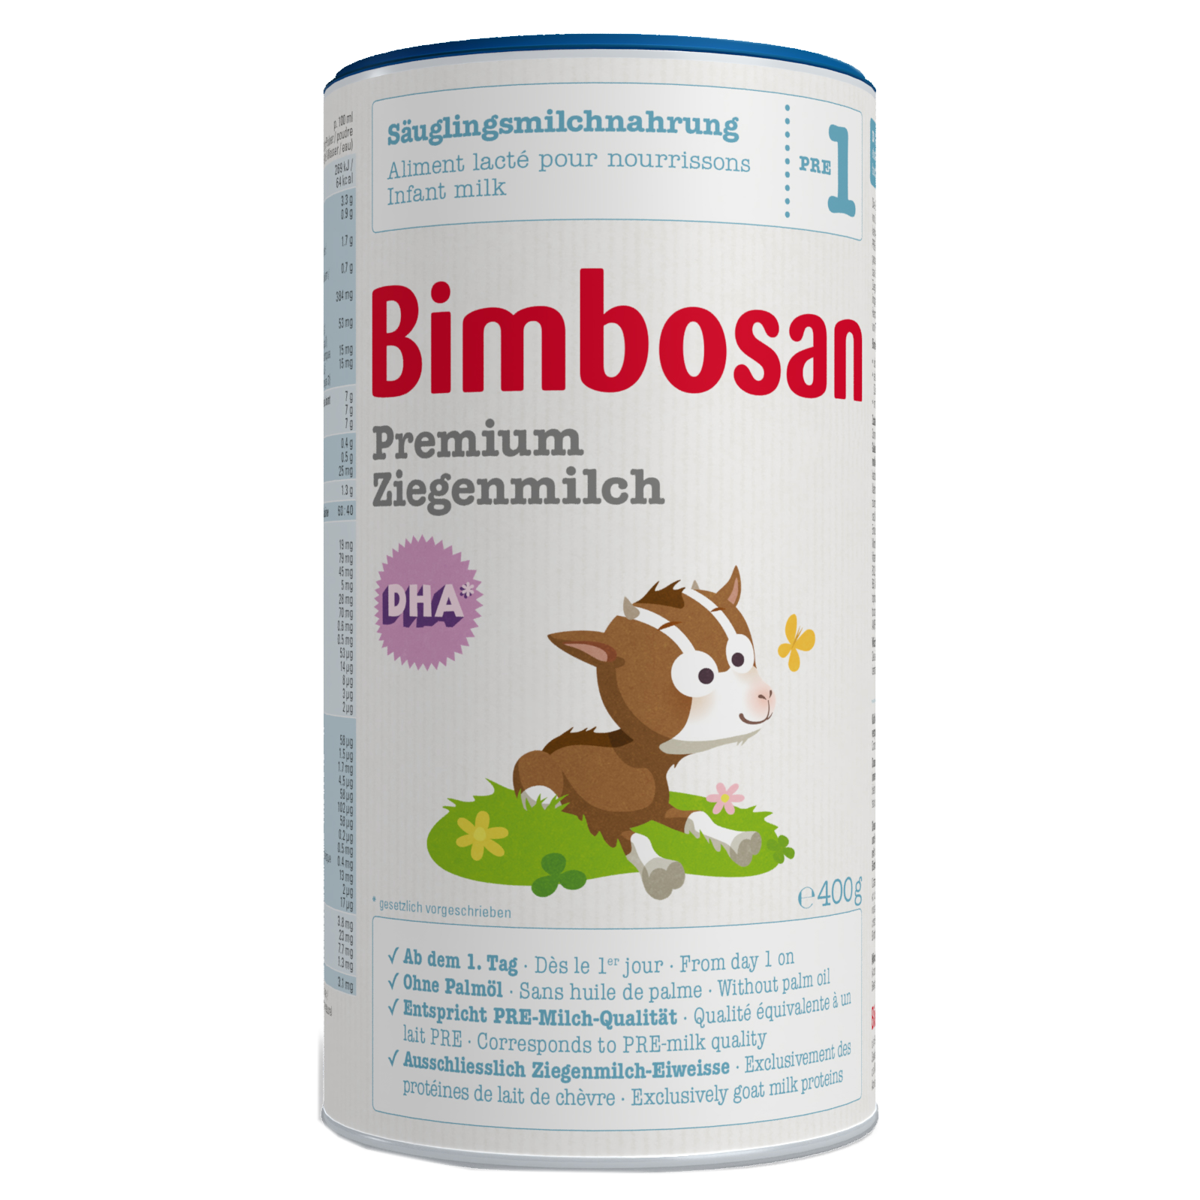 Bimbosan Premium Ziegenmilch 1 Dose 400 g